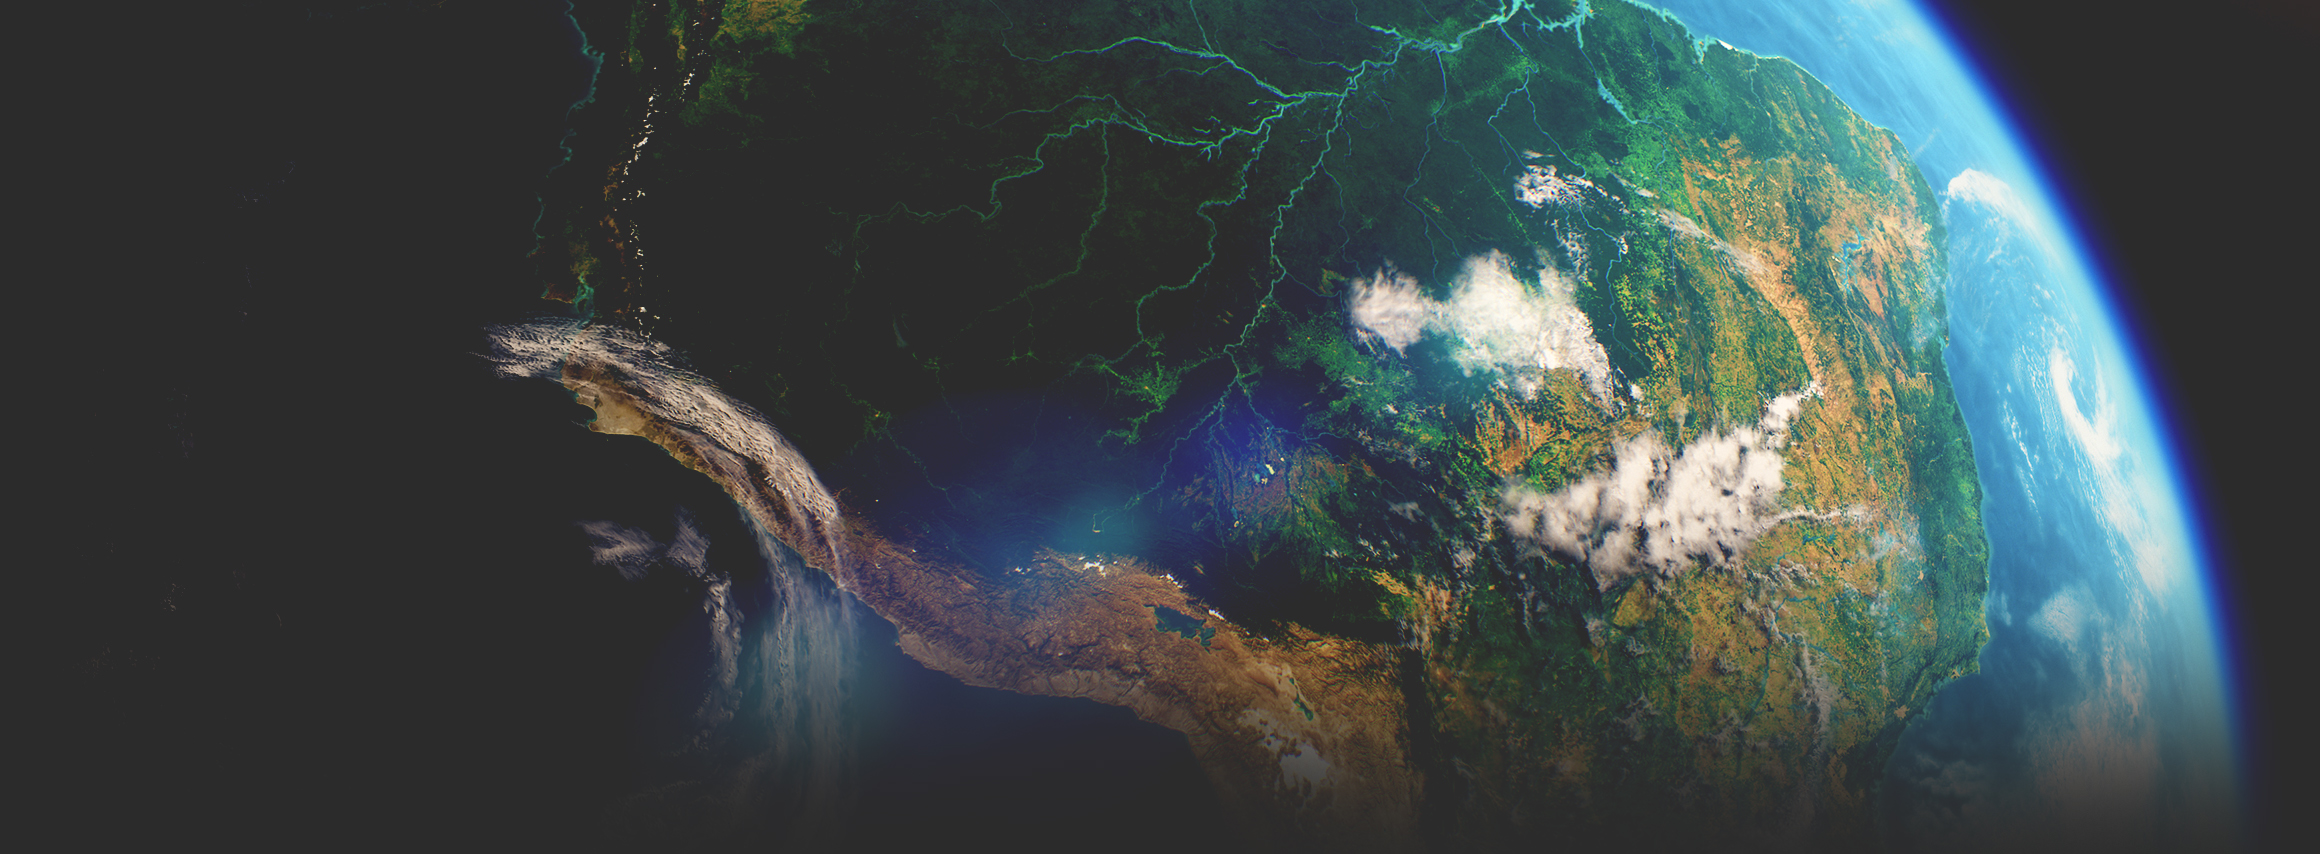 صور بالقمر الصناعي مأخوذة من الفضاء تُظهر قارة خضراء بها نهر يمر عبرها والمحيط والغلاف الجوي